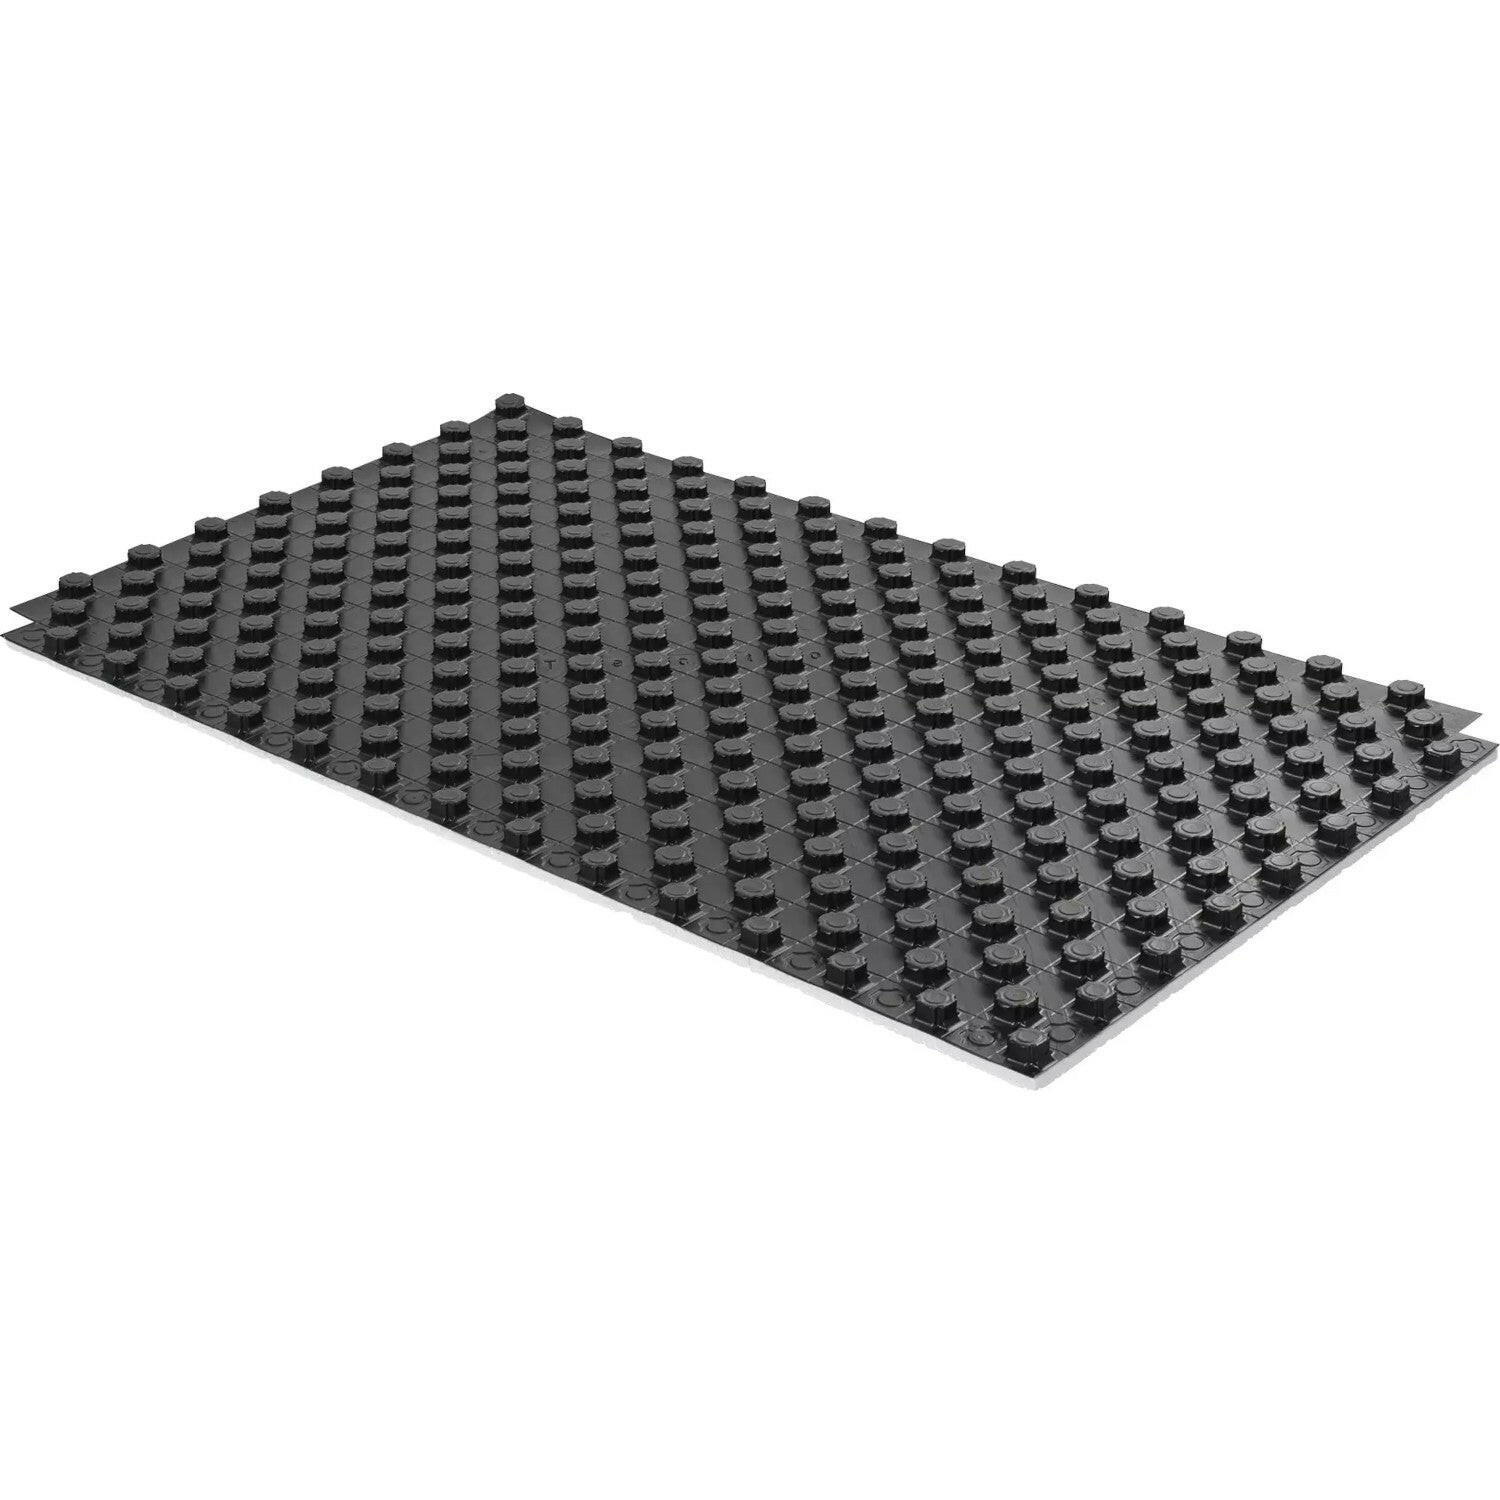 Uponor Tecto padlófűtés rendszerlemez 1450mm x 850mm x 33mm (1,23 m2) (16-17mm csövekhez) 3t/m2-0